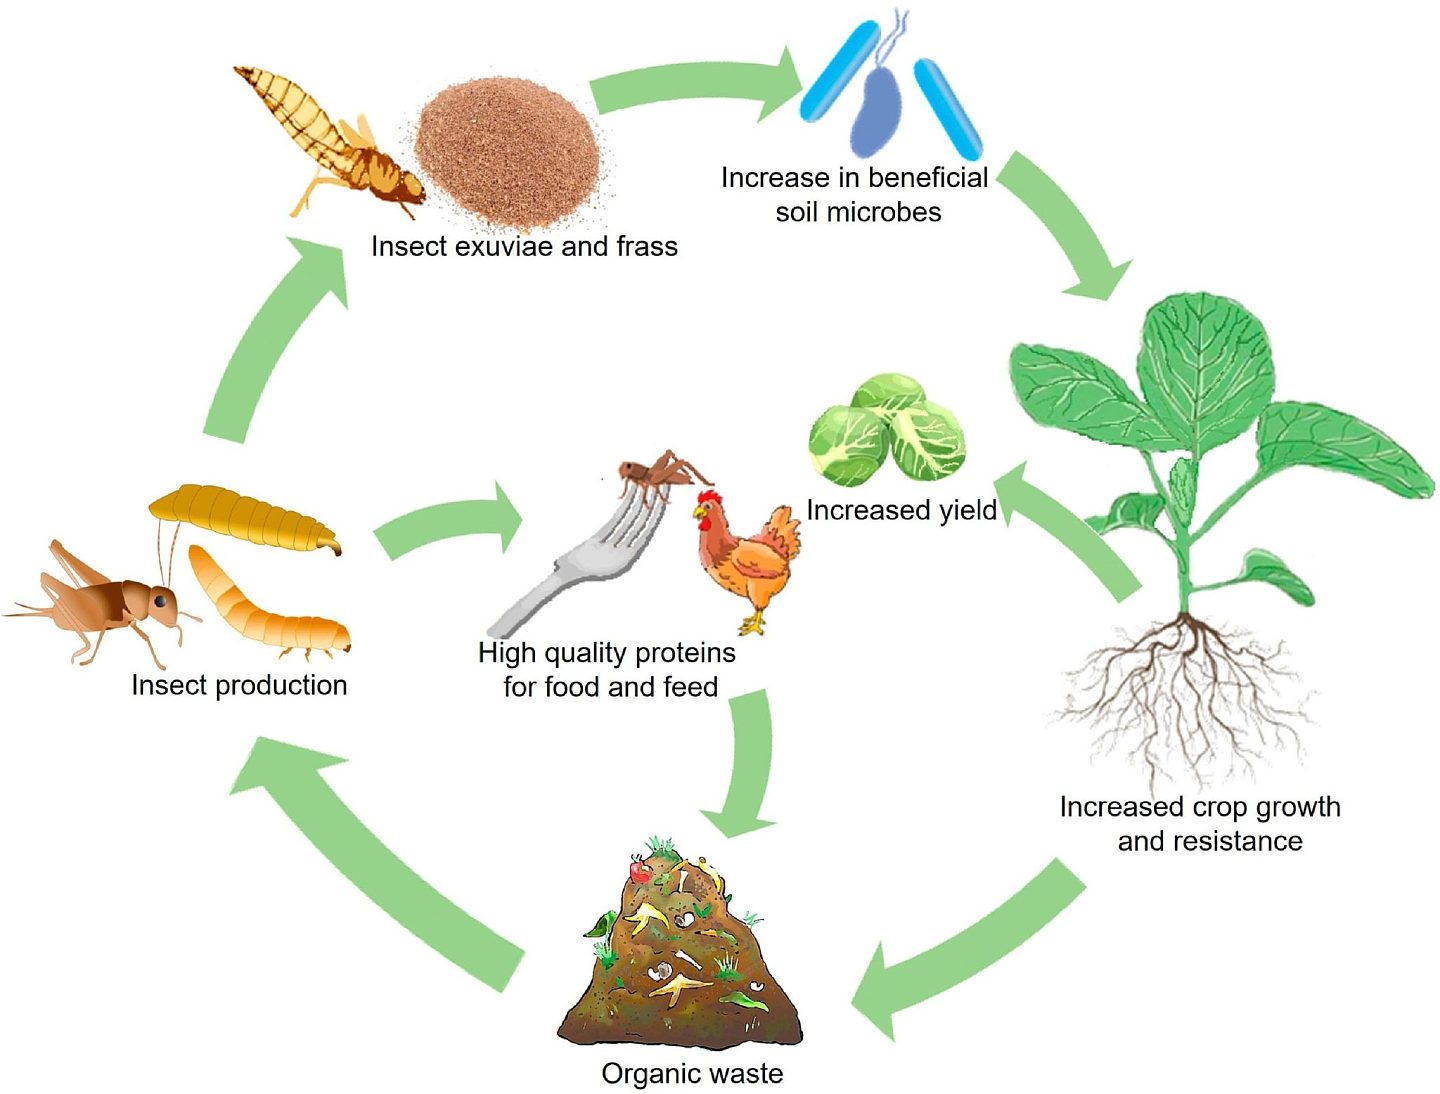 植物生态学家：我们应该吃更多的昆虫并利用其废物来种植农作物 - 1